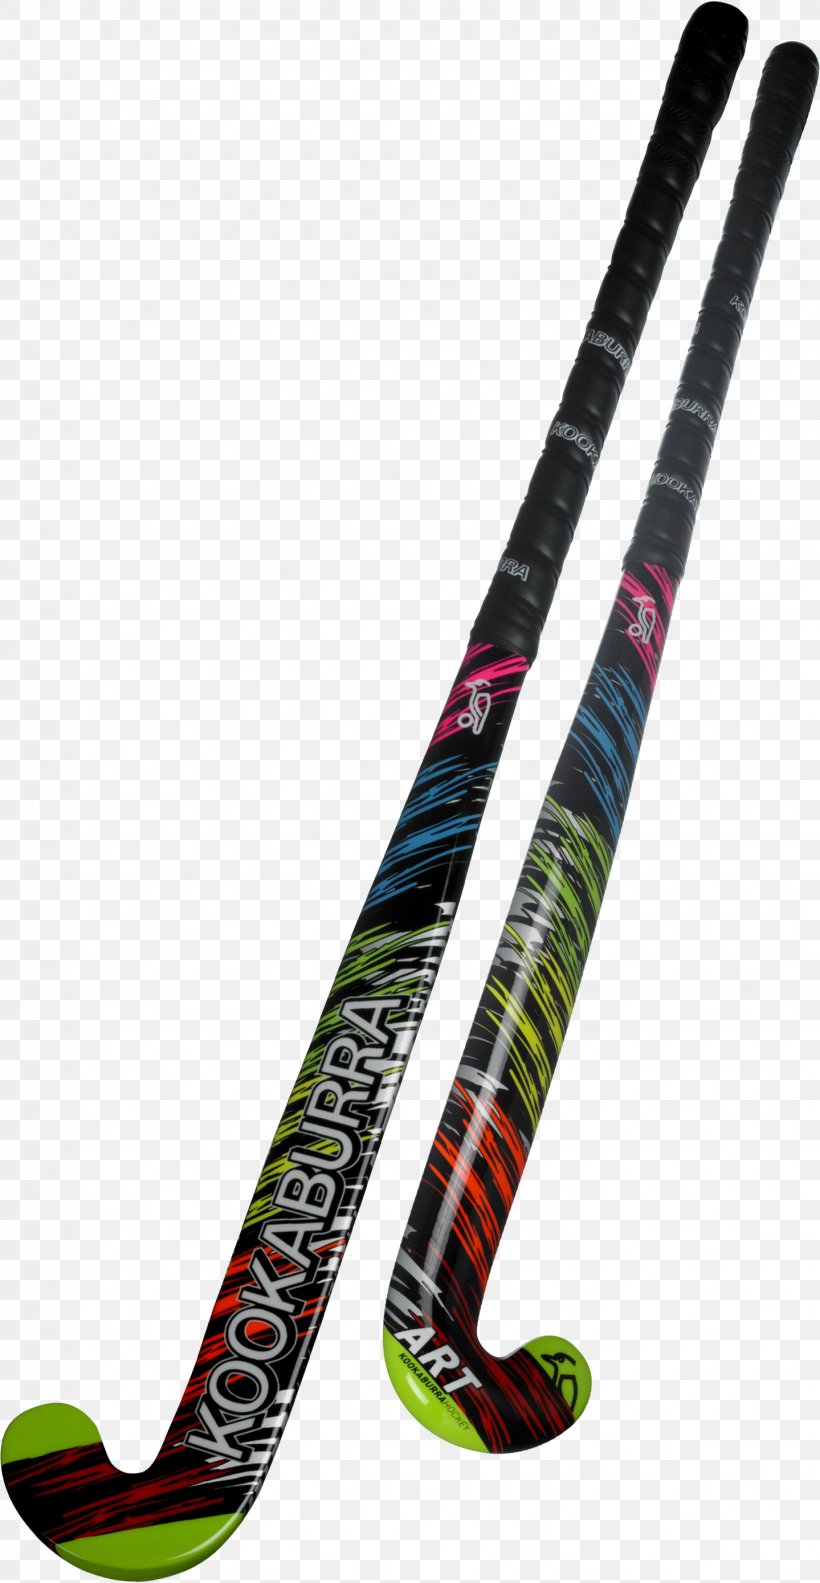 Field Hockey Sticks Kookaburra, PNG, 1439x2778px, Hockey Sticks, Cricket, Cricket Balls, Cricket Bats, Field Hockey Download Free